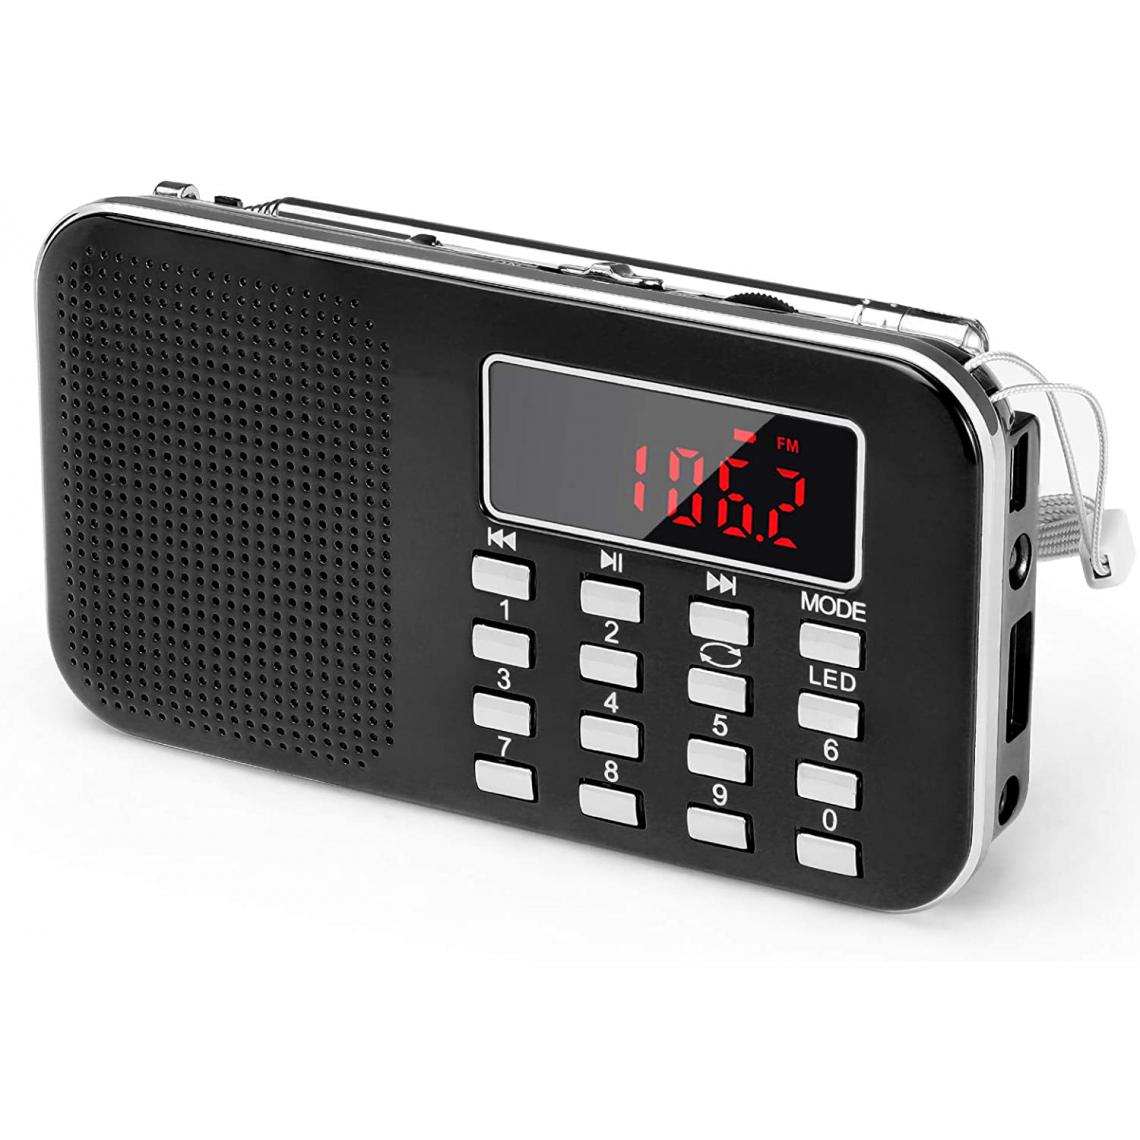 Prunus - radio portable AM / FM / SD / AUX / USB avec batterie rechargeable de 1200 mAh noir gris - Radio